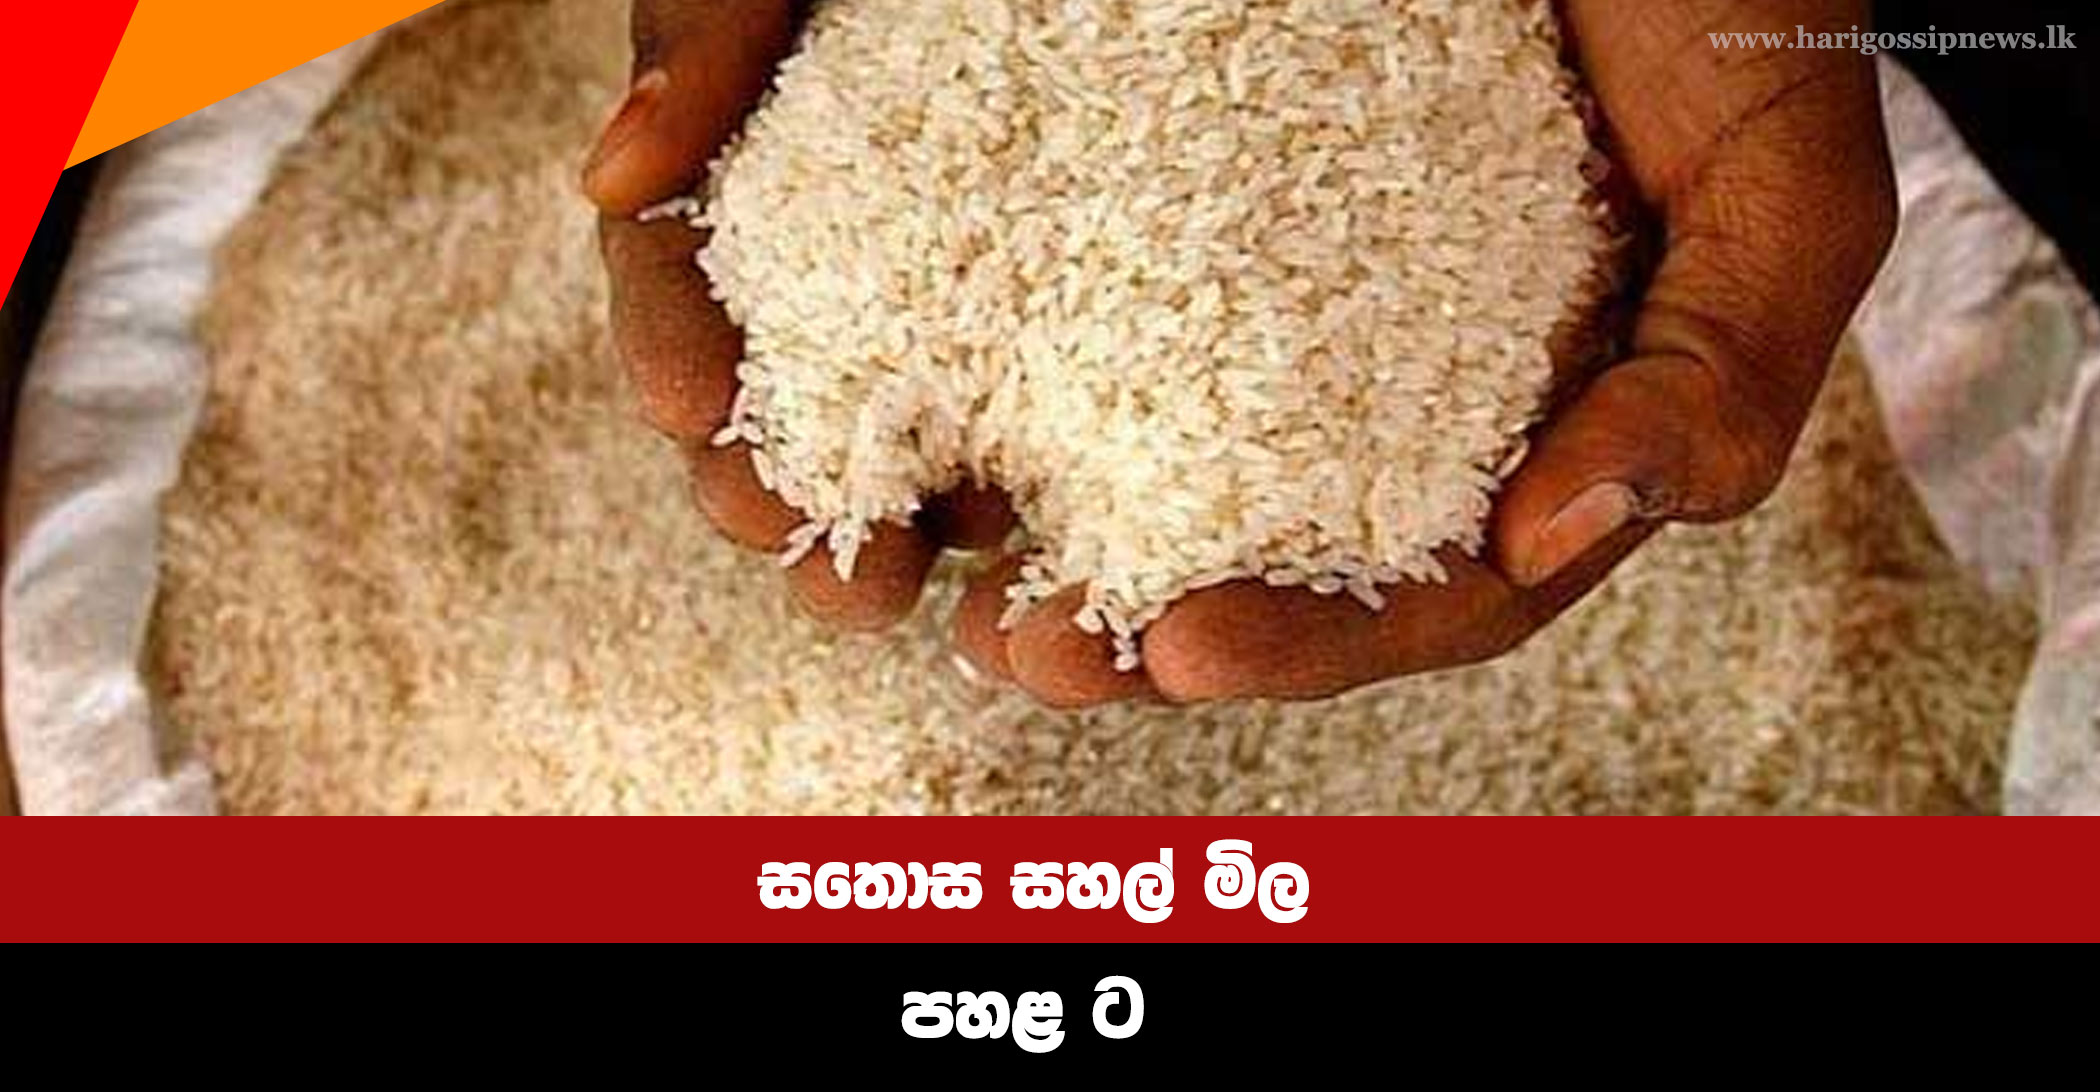 Sathosa-rice-prices-down